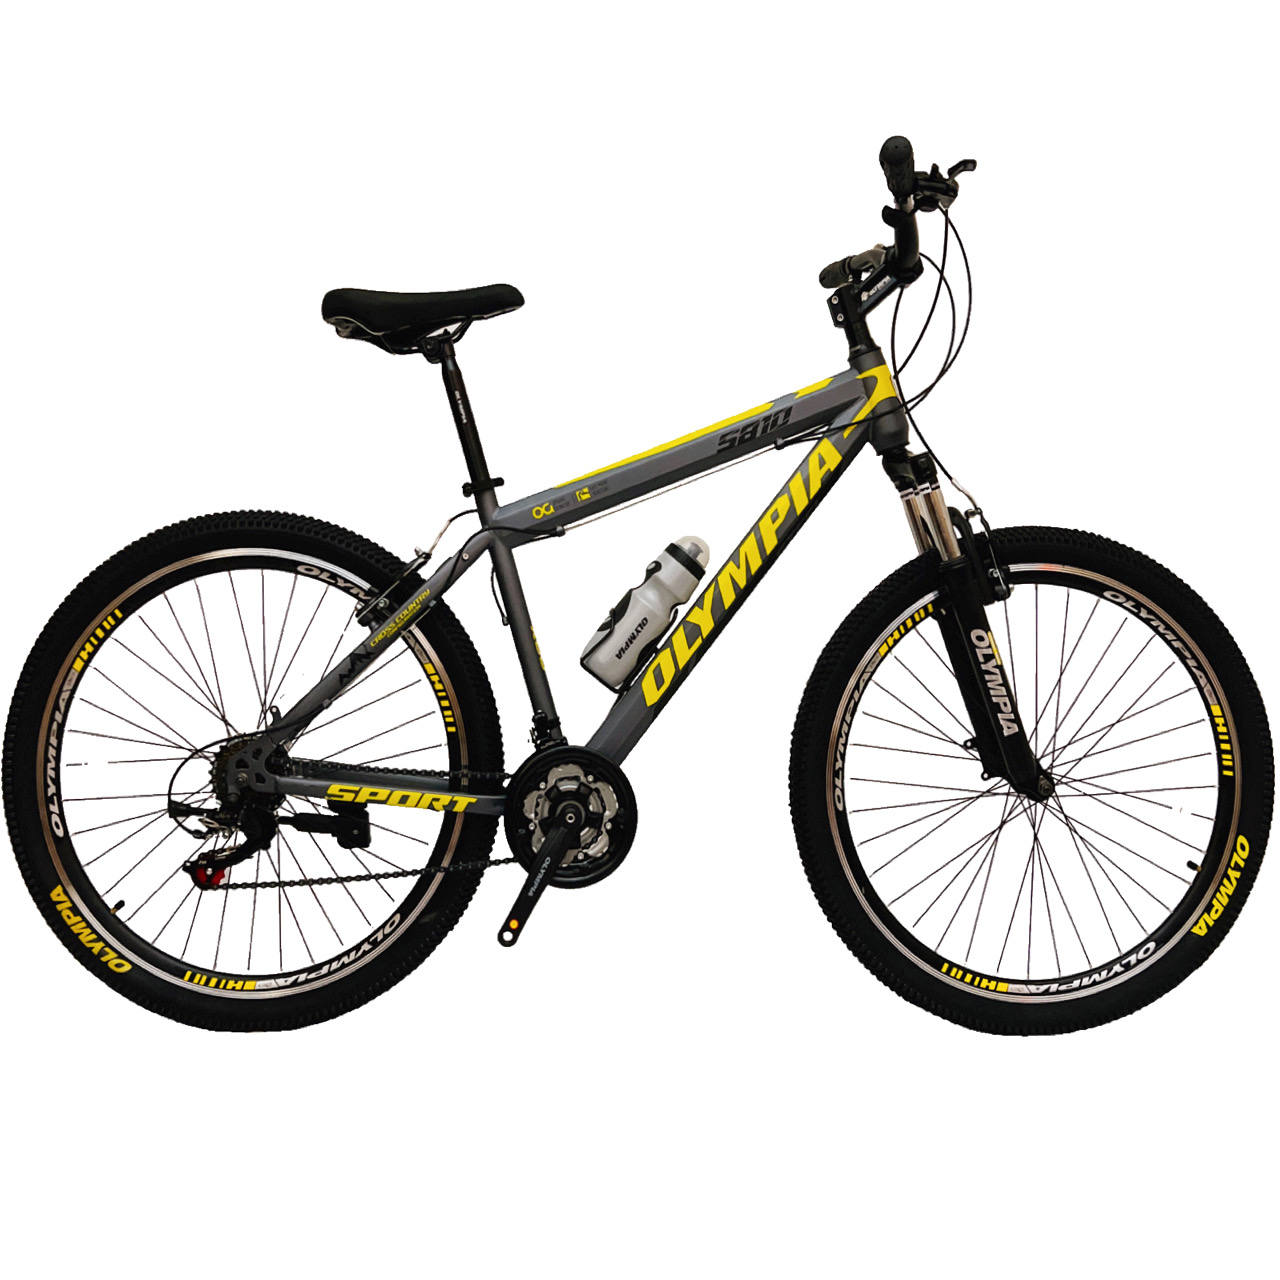 نکته خرید - قیمت روز دوچرخه کوهستان المپیا مدل STEEL SPORT سایز 27.5 خرید